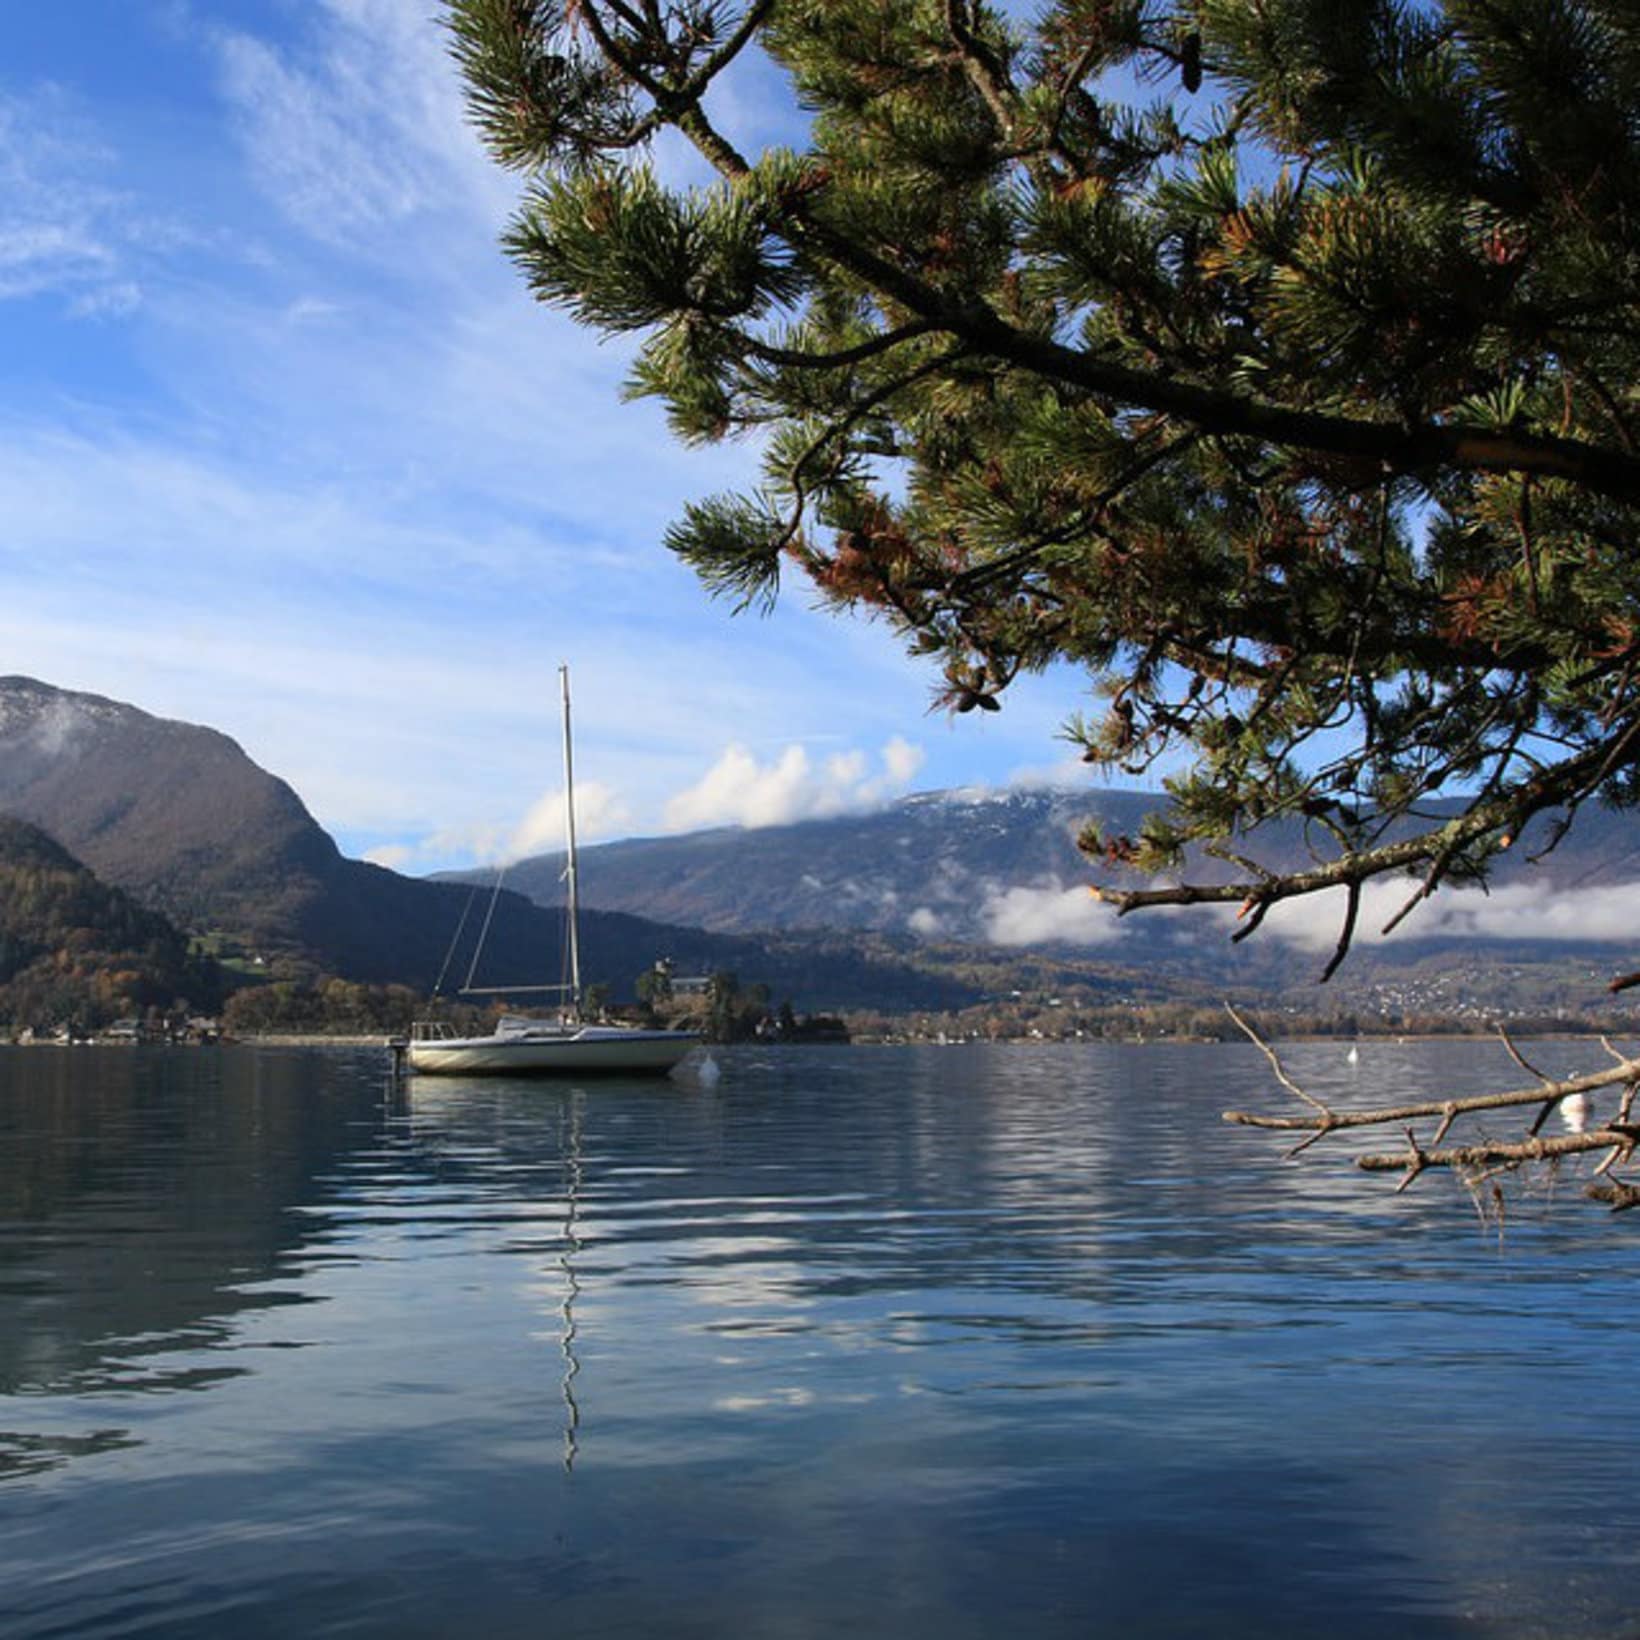 le superbe lac d'Annecy dans les Alpes, en Haute-Savoie, où l'on peut pratiquer de nombreux sports nautiques